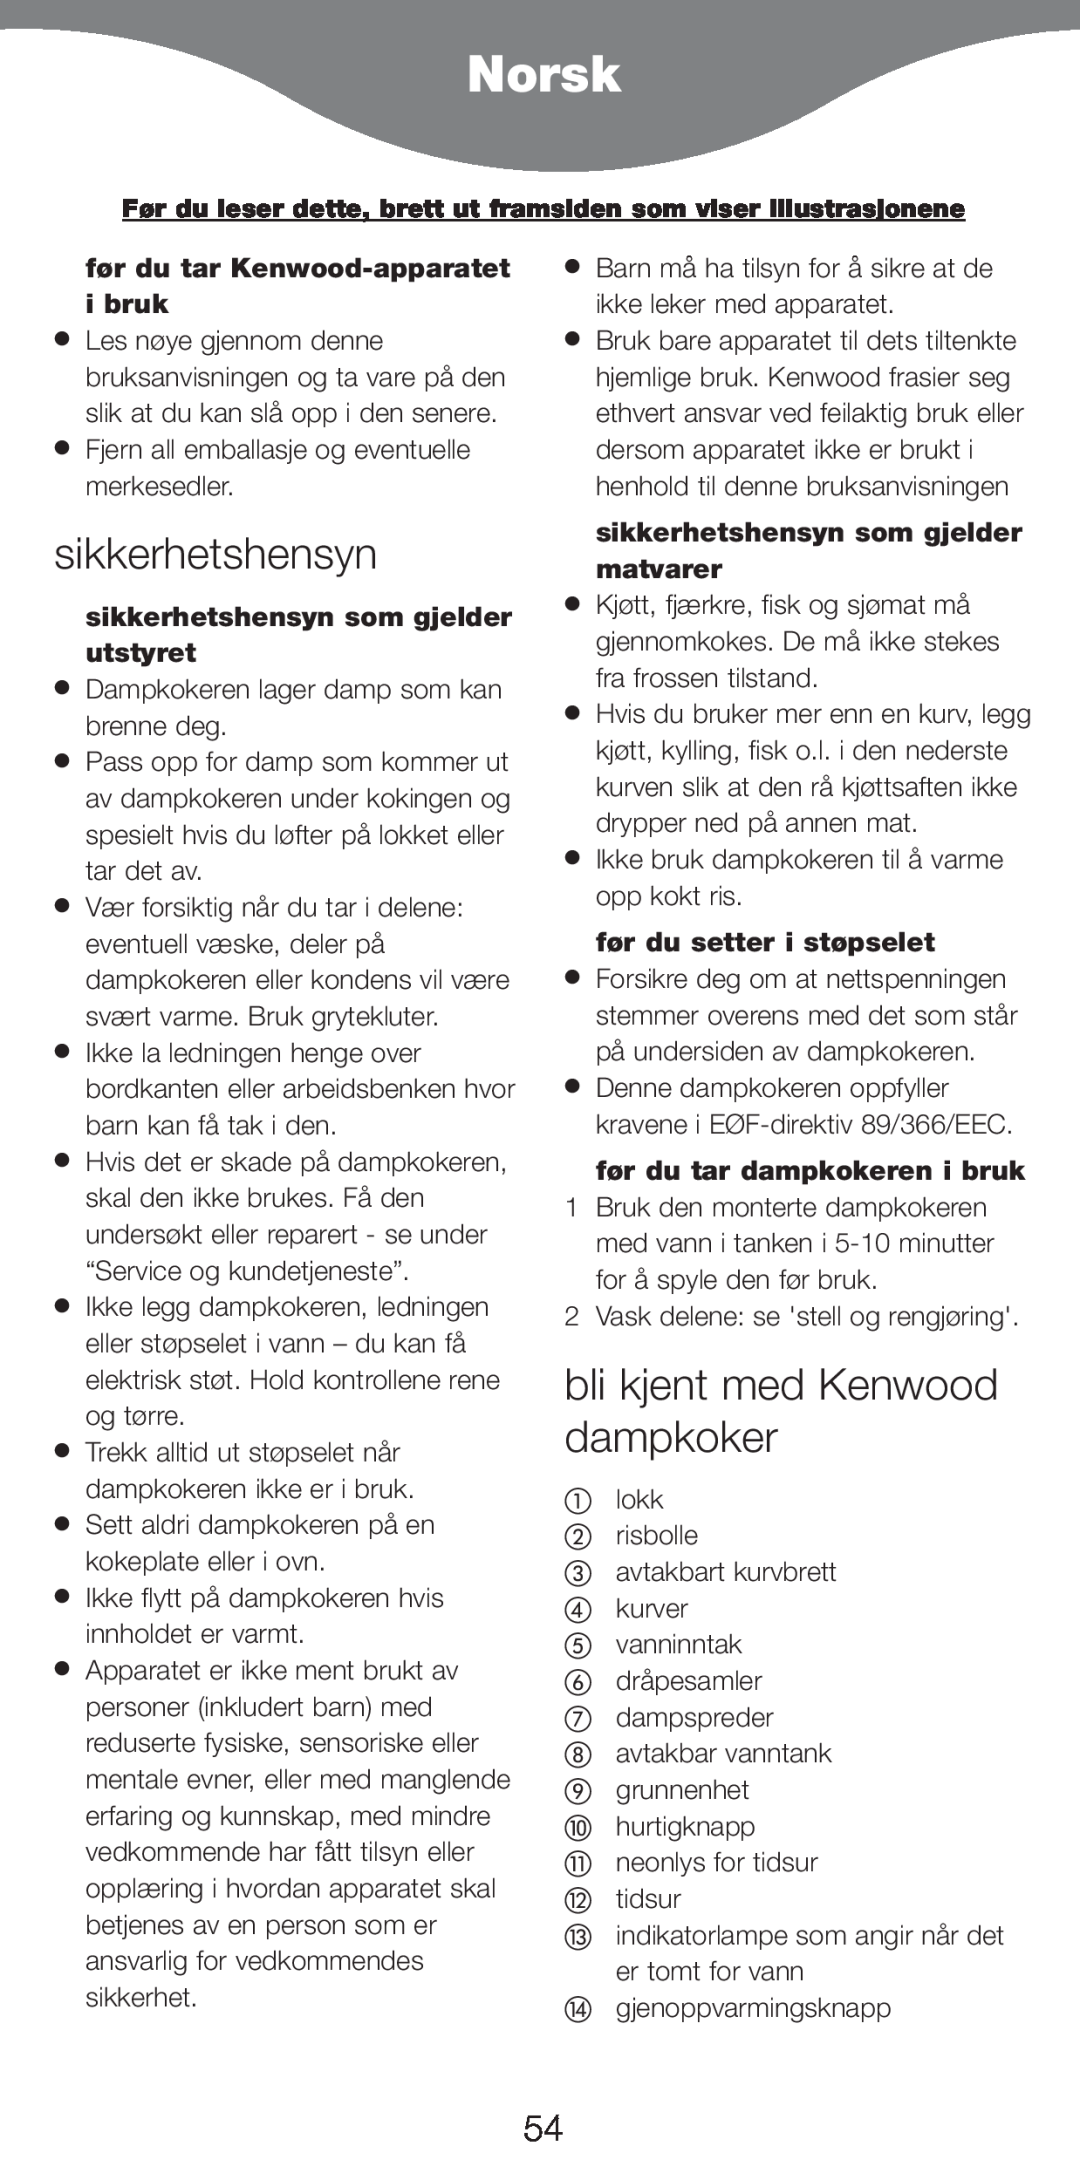 Kenwood FS620 manual Norsk, sikkerhetshensyn, bli kjent med Kenwood dampkoker, før du tar Kenwood-apparatet i bruk 